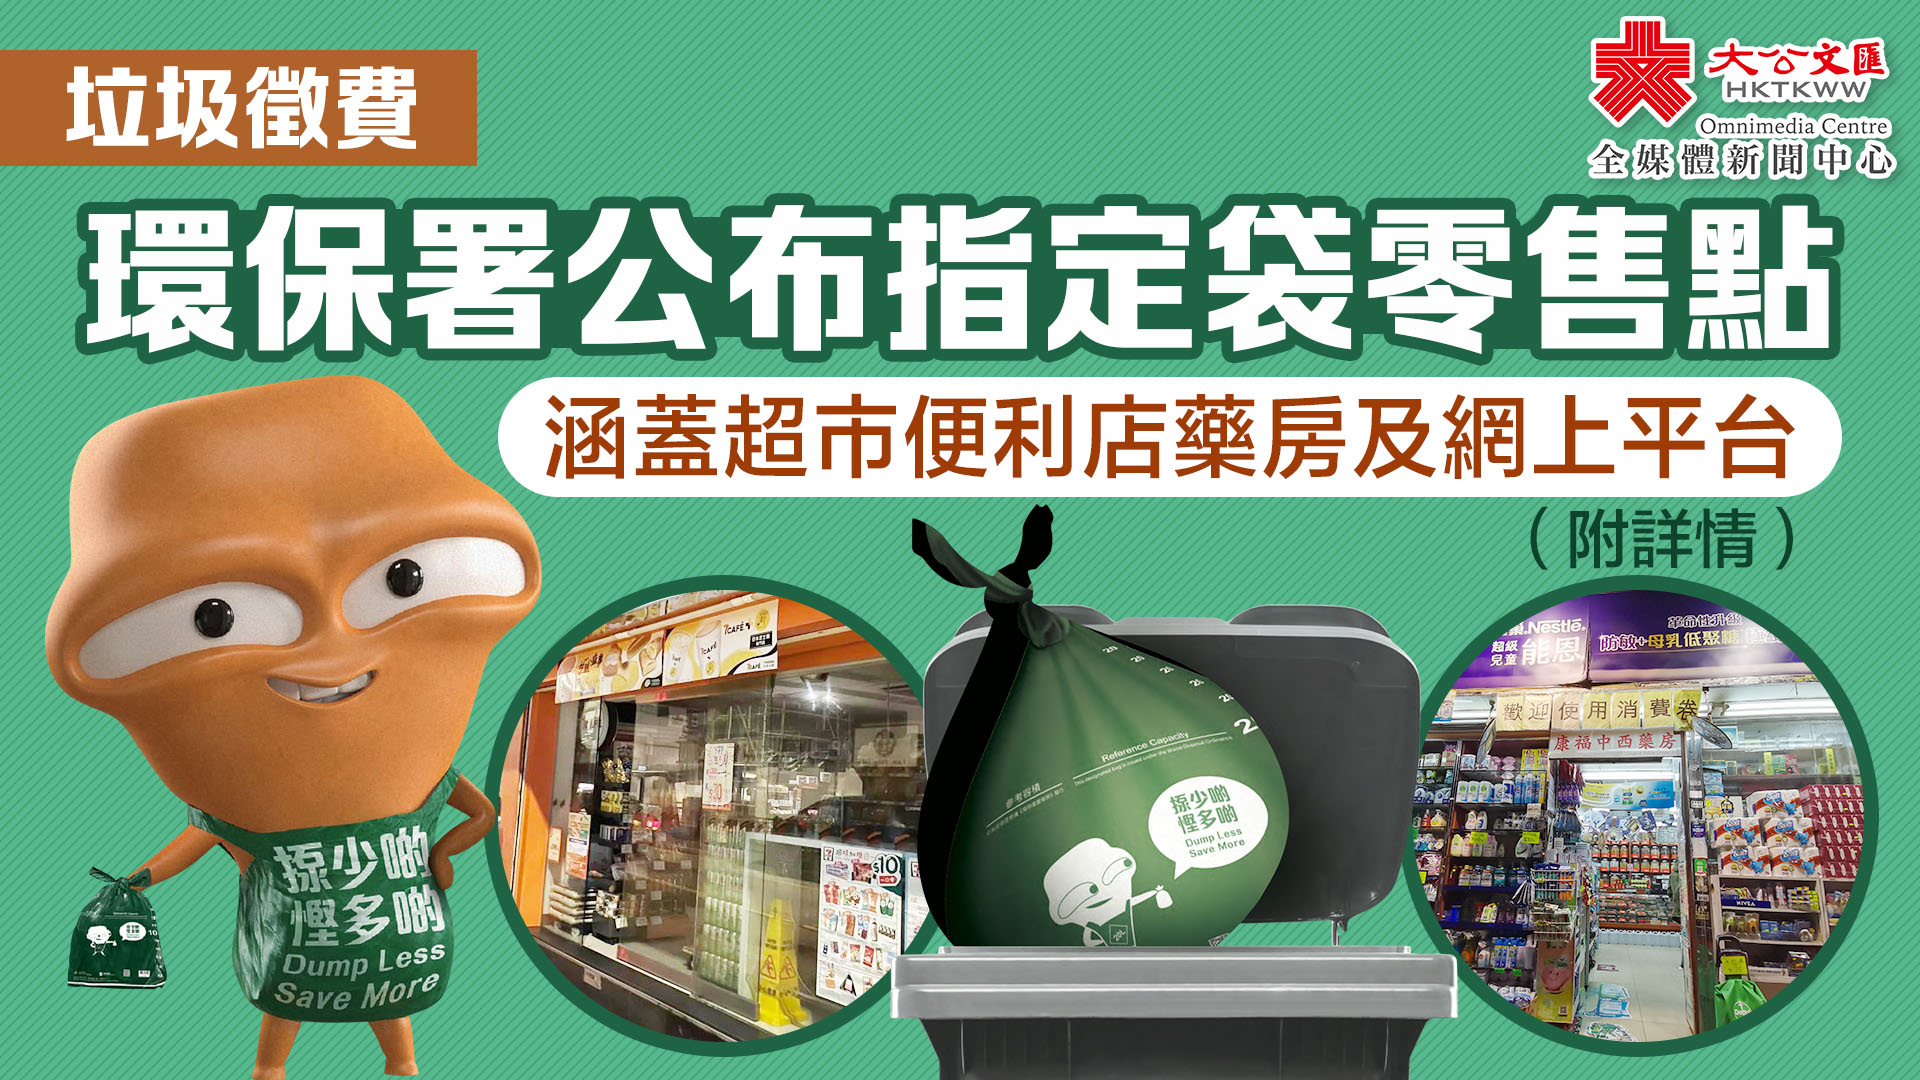 垃圾徵費｜環保署公布指定袋零售點　涵蓋超市便利店藥房及網上平台